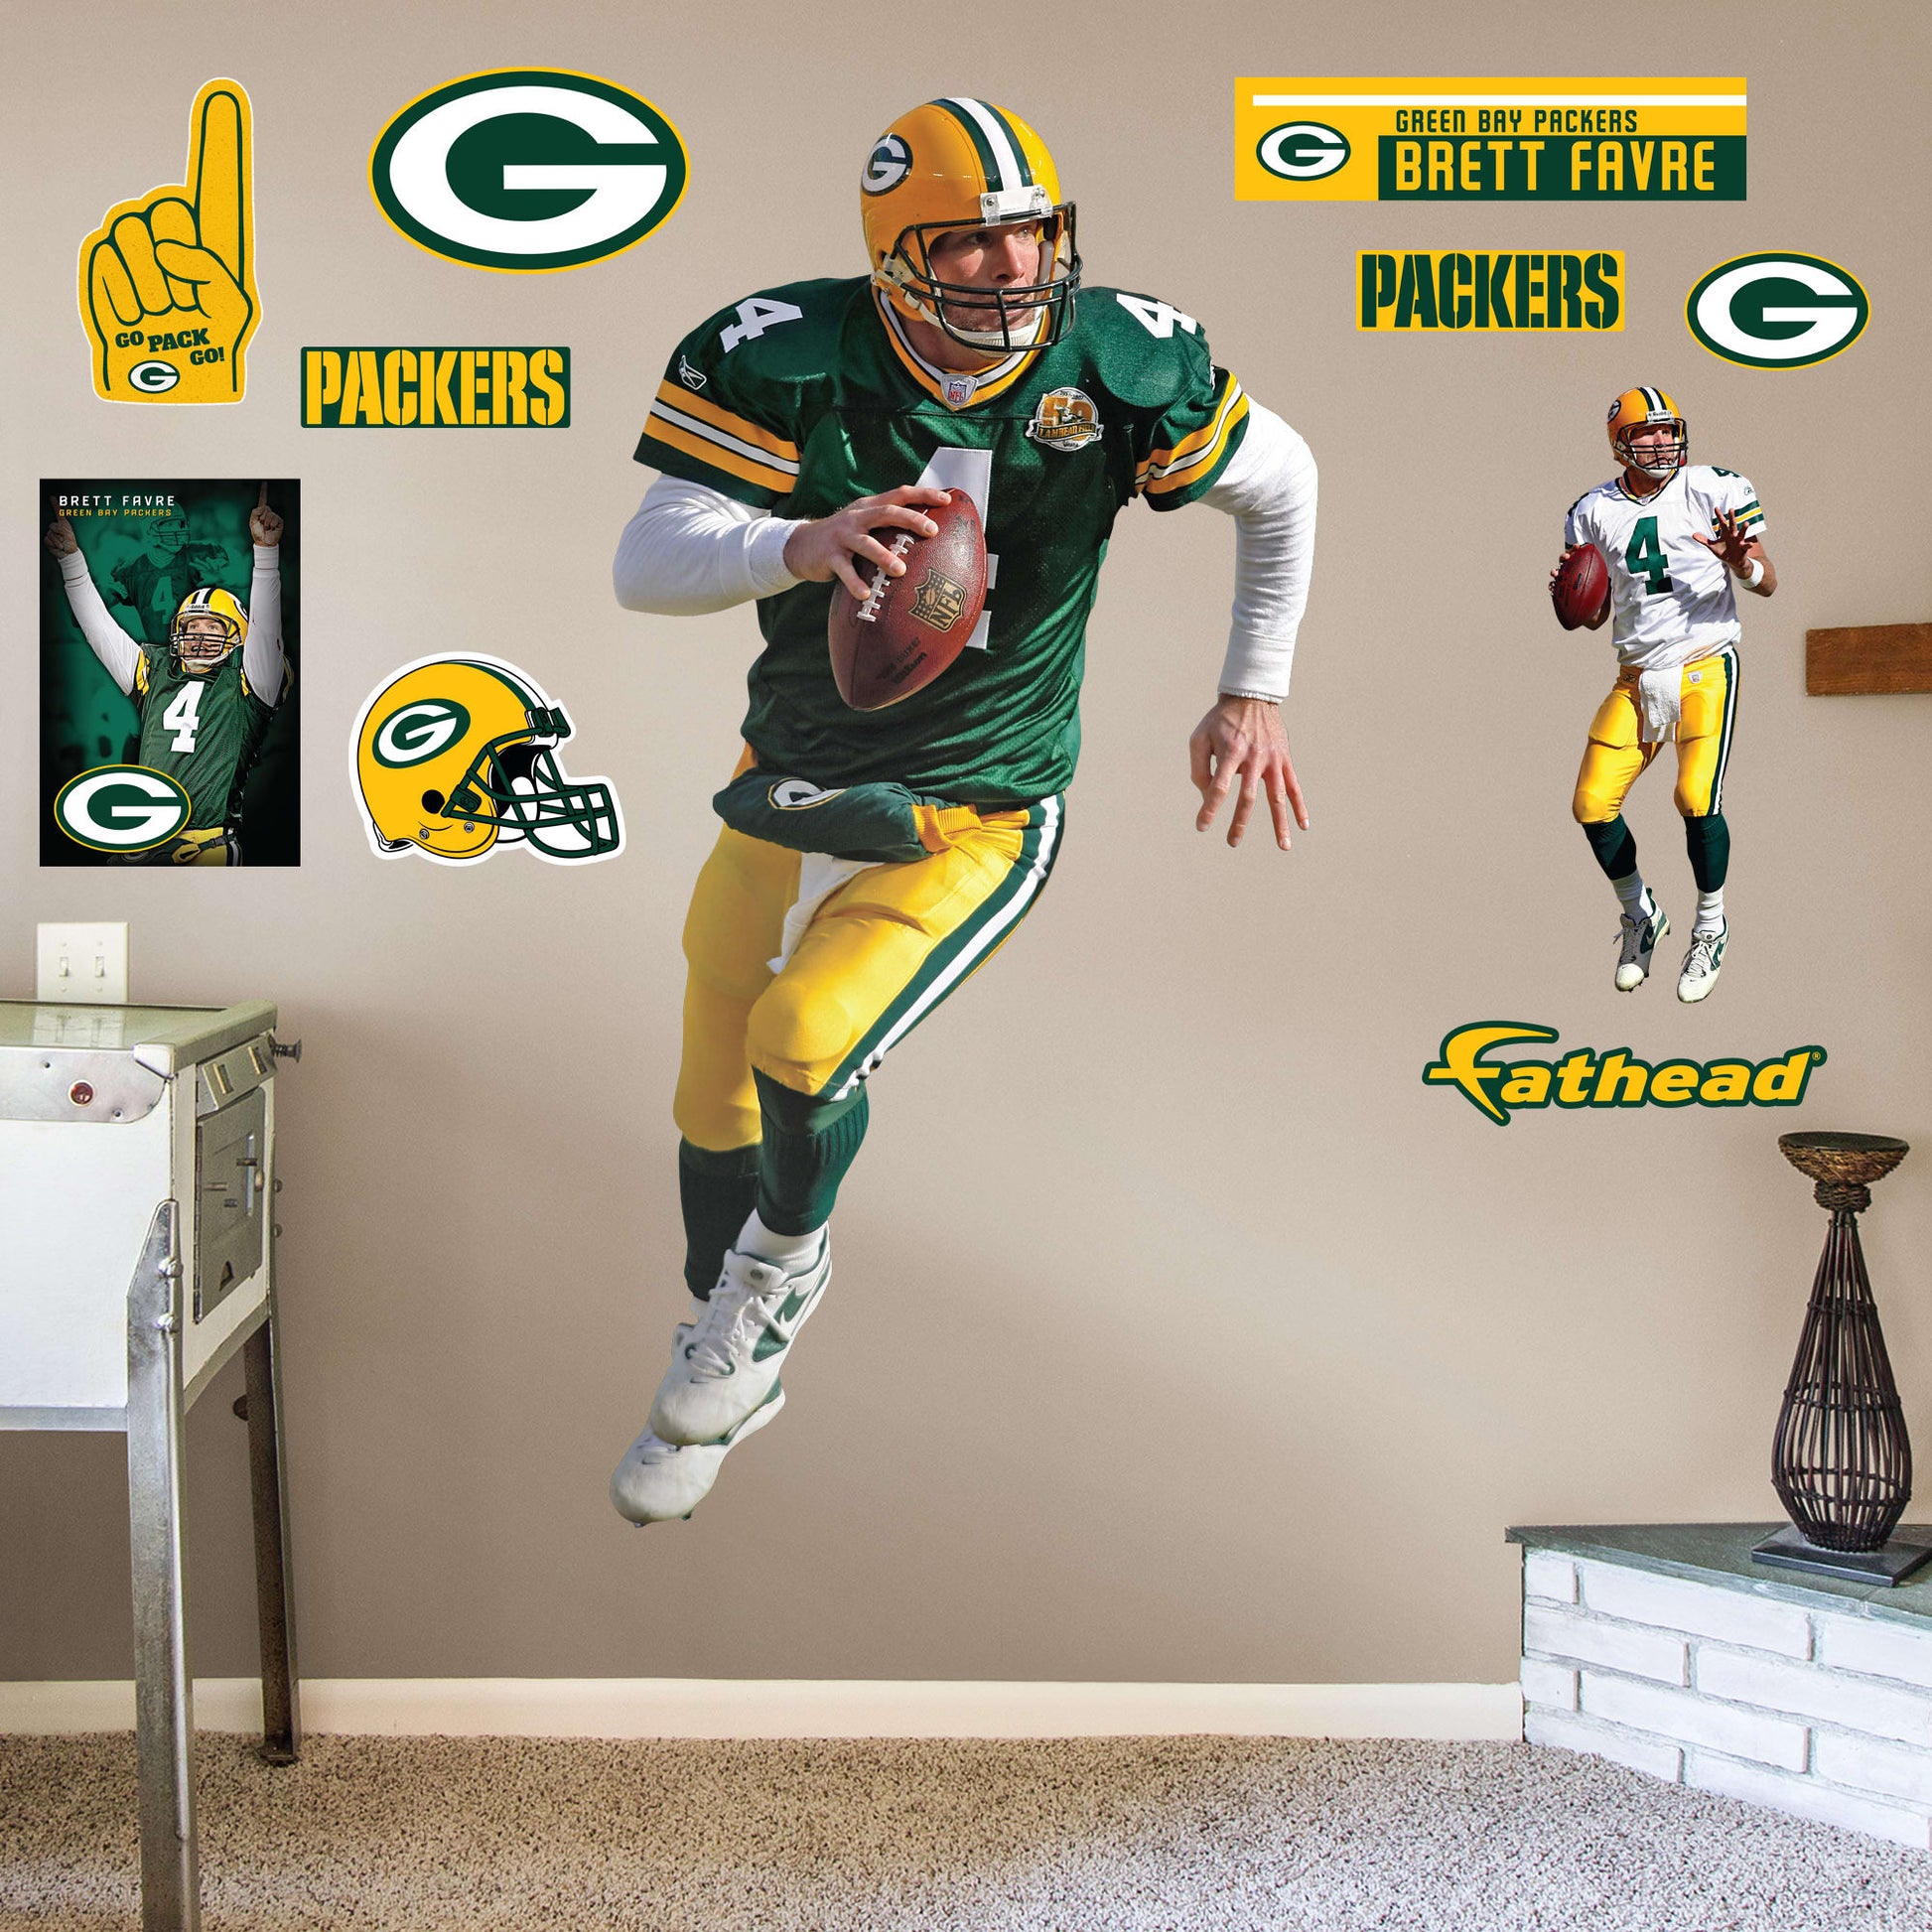 Brett Favre Green Bay Packers Throwback Football Jersey – Best